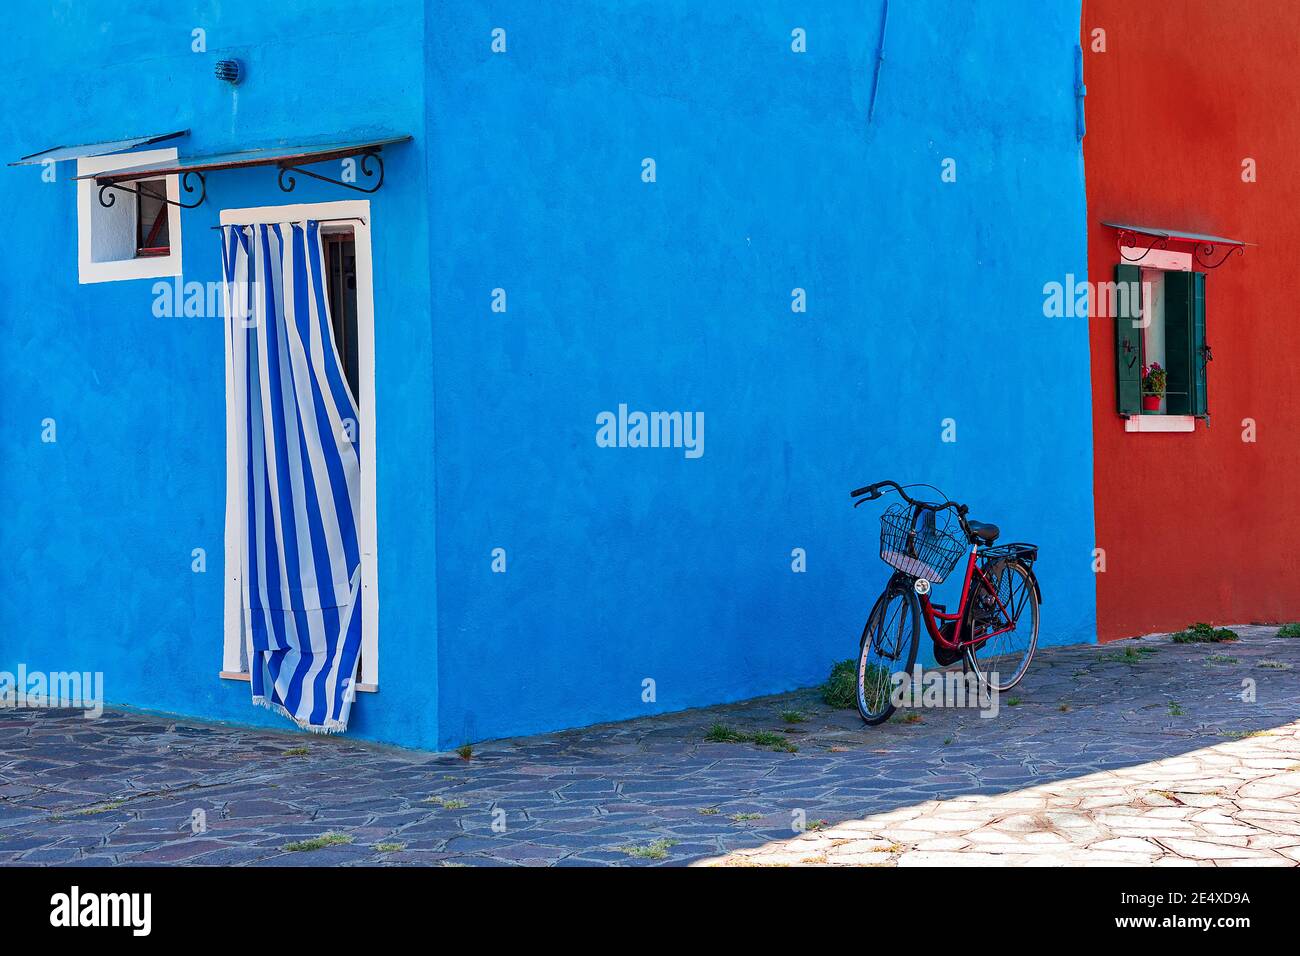 Fahrrad vor typischen Häusern in lebendigen blauen und roten Farben in Burano - kleine Stadt in Venetien, Italien gemalt. Stockfoto